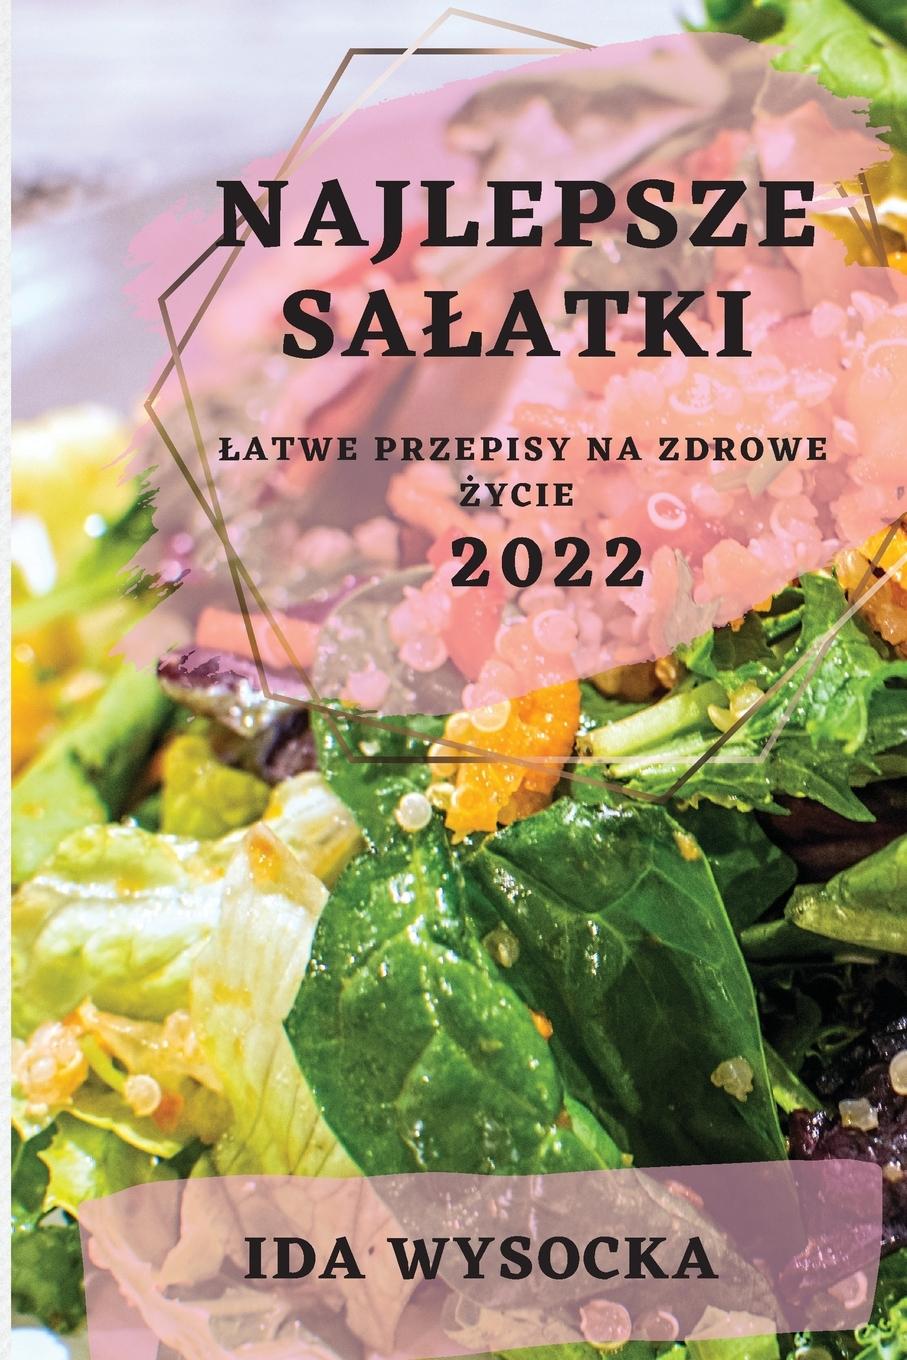 Carte Najlepsze Salatki 2022 